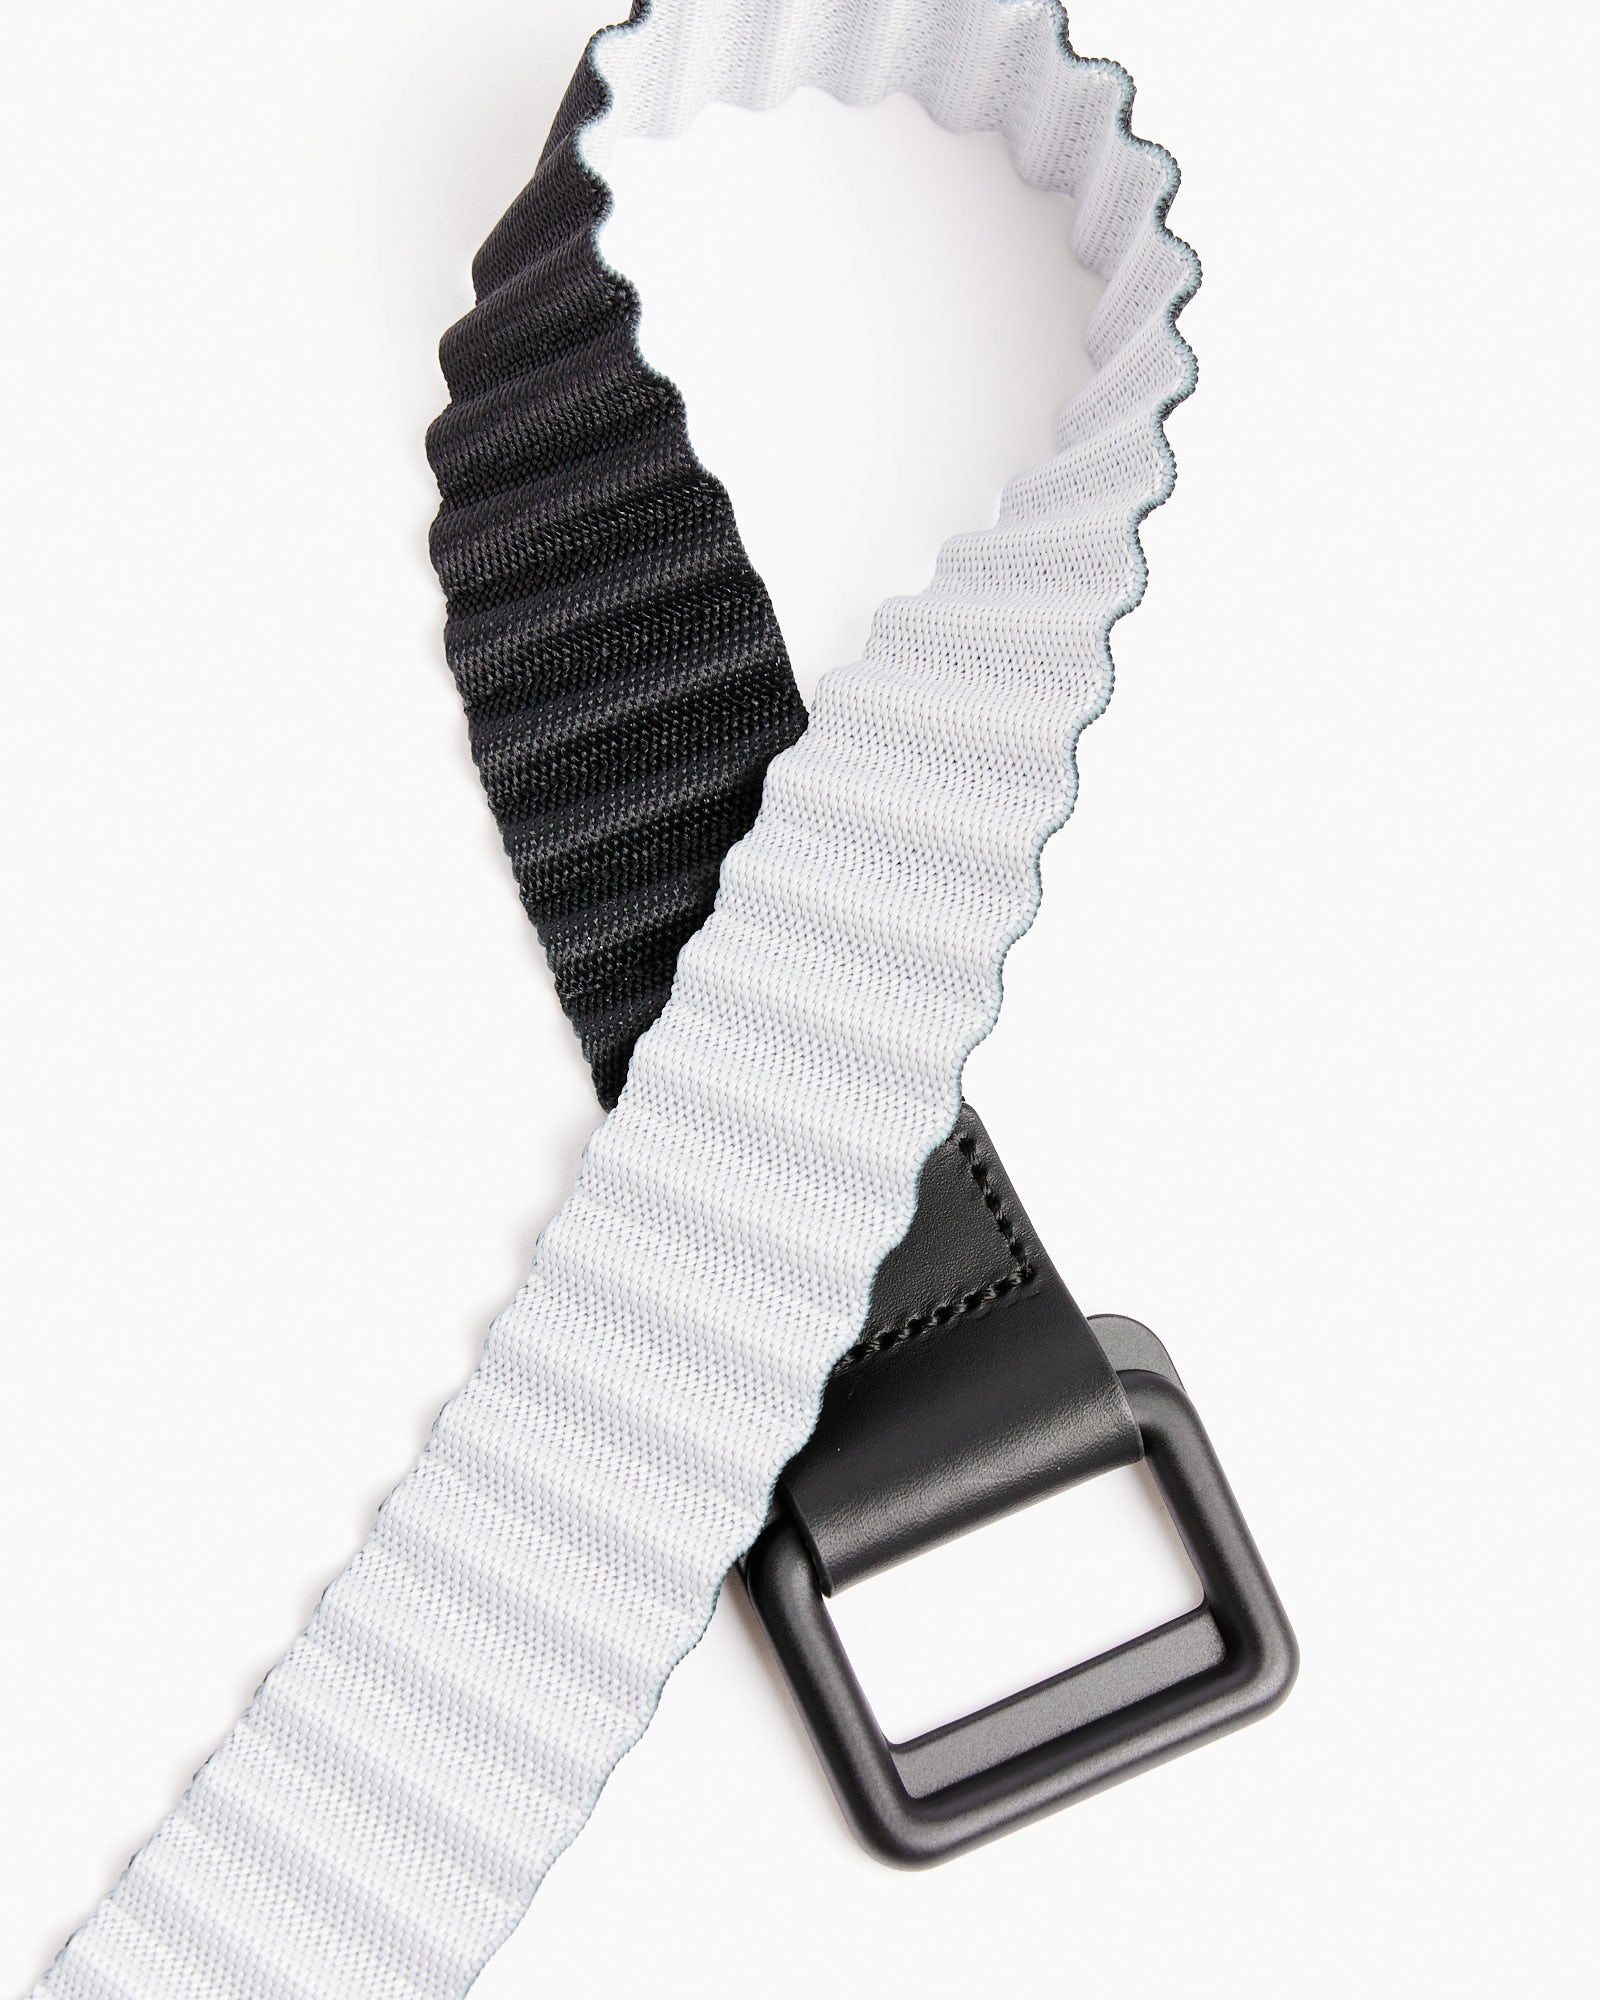 Pleat Belt in Charcoal/Light Grey